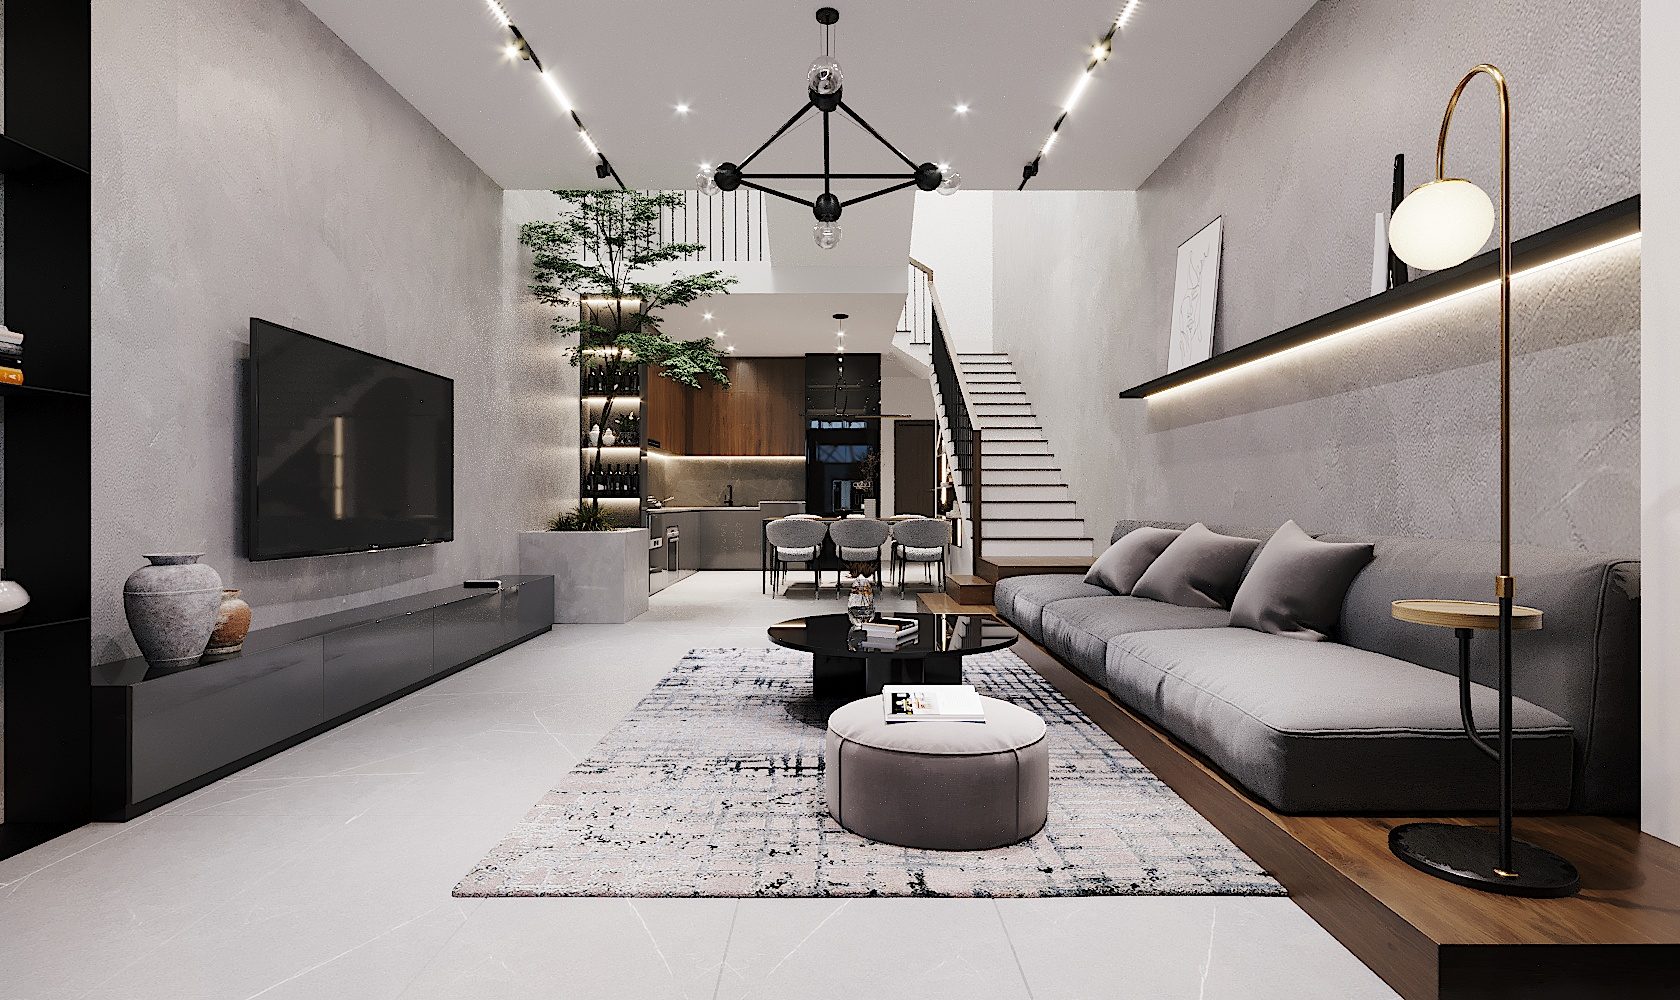 Phong cách nội thất tối giản cho không gian sống